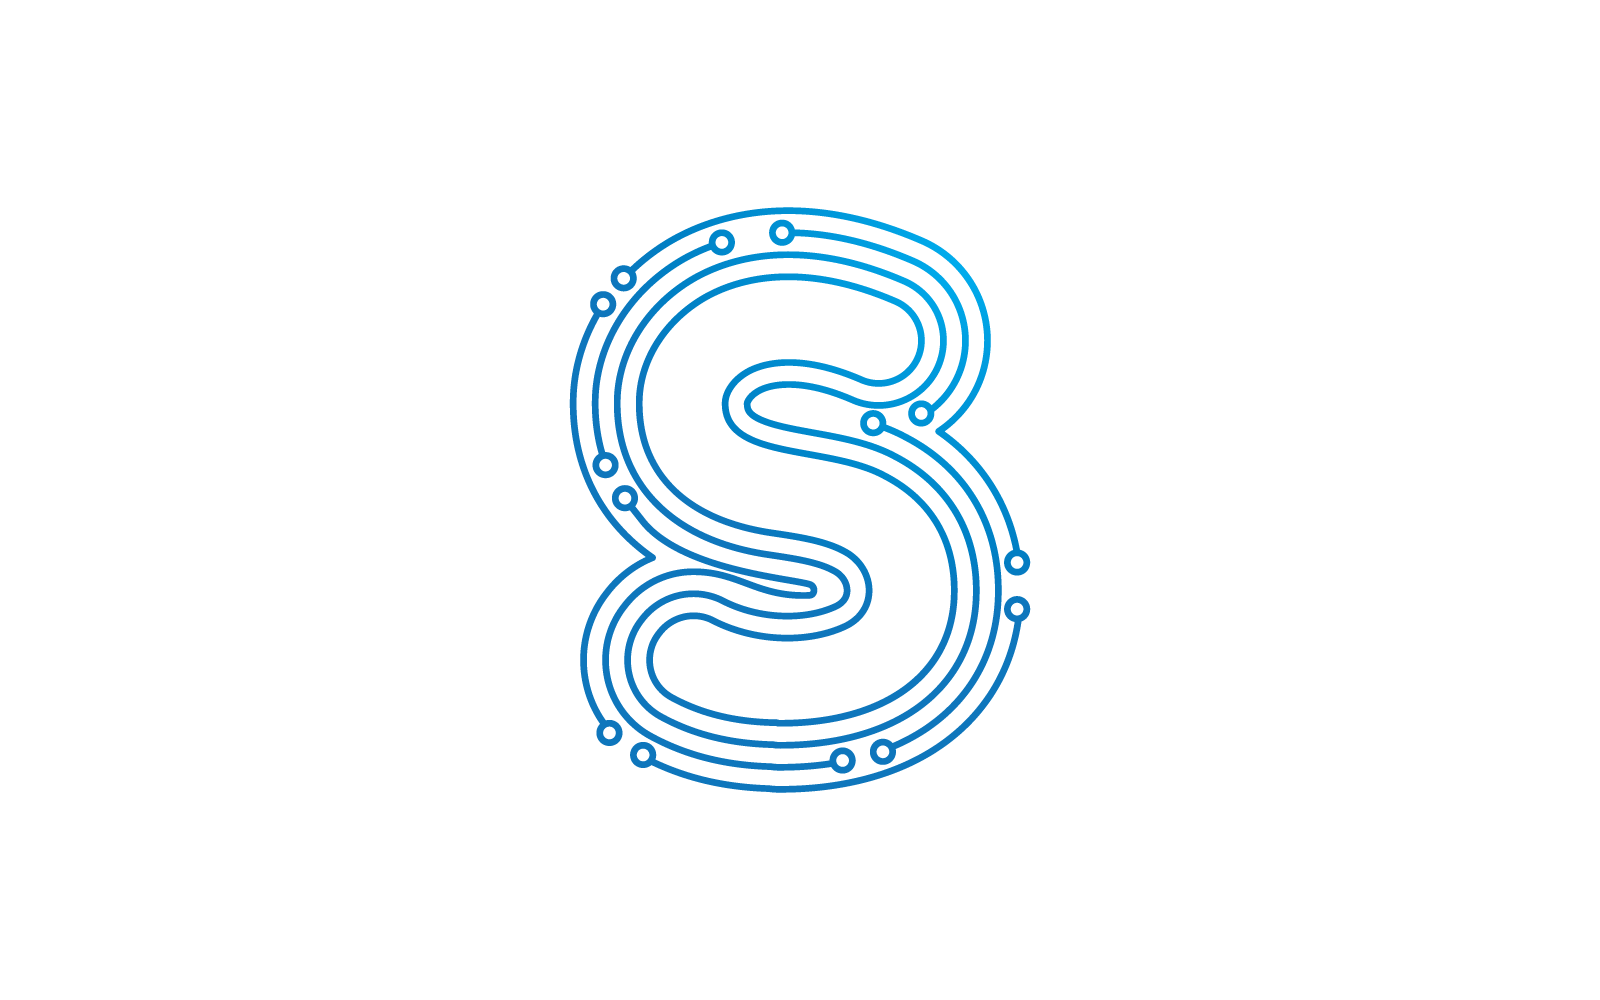 S початкової букви схеми технології ілюстрація логотип вектор шаблон